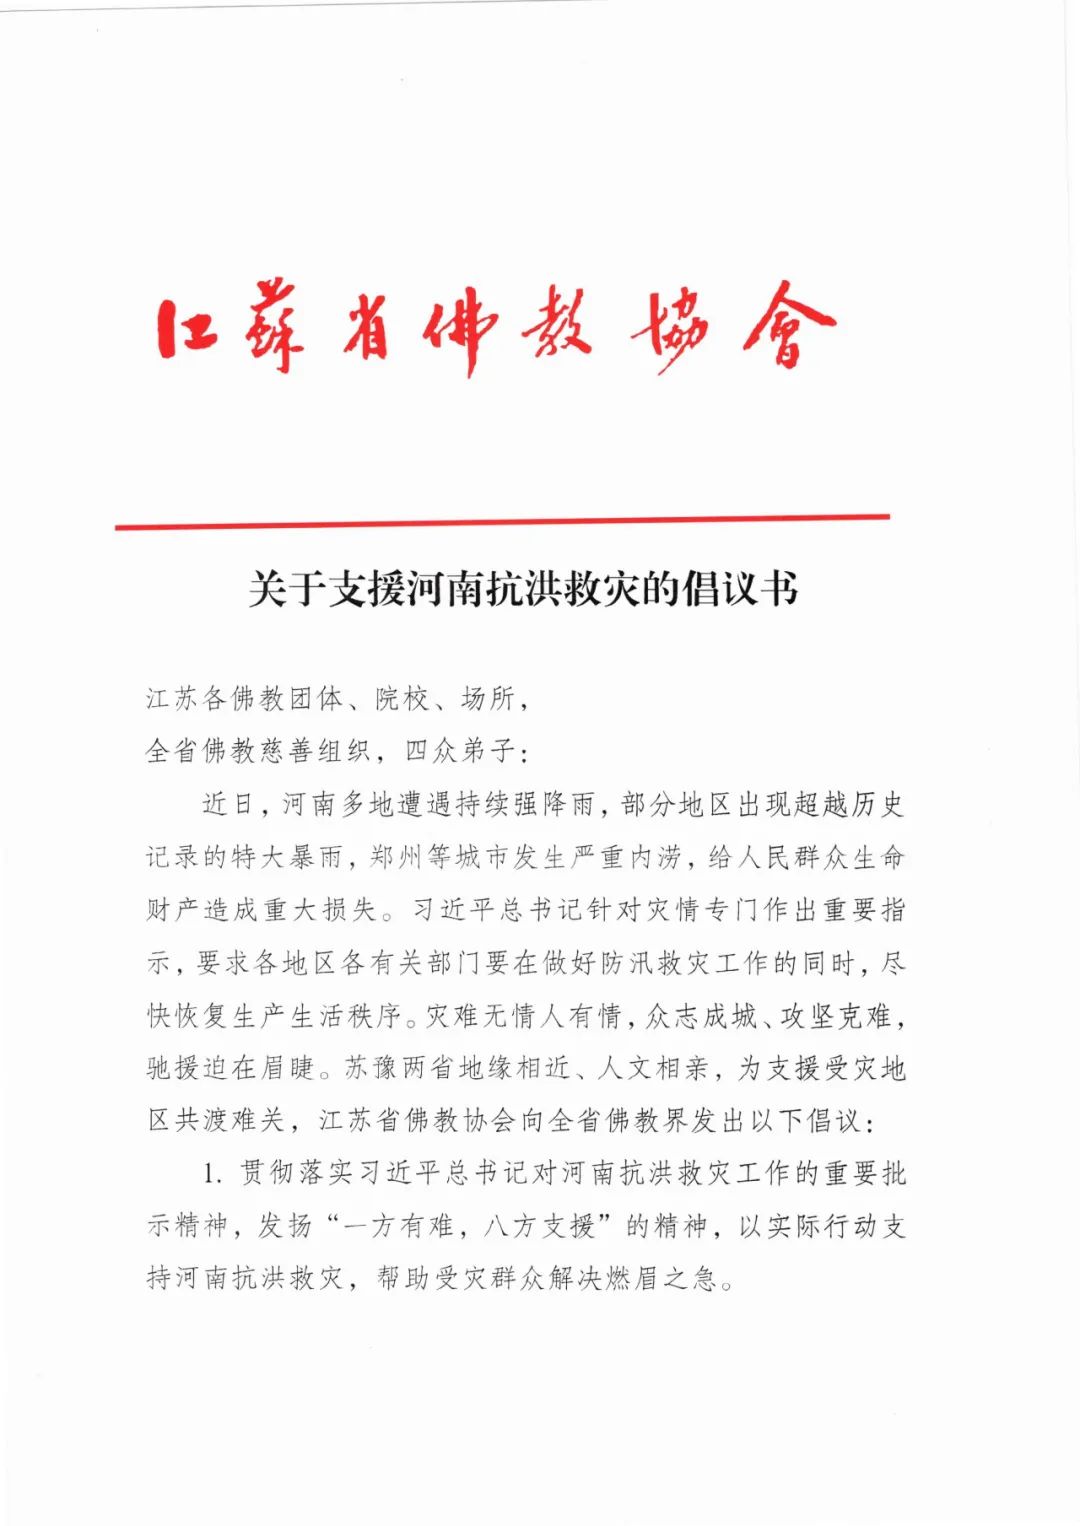 江苏省佛教协会发布关于支援河南抗洪救灾的倡议书